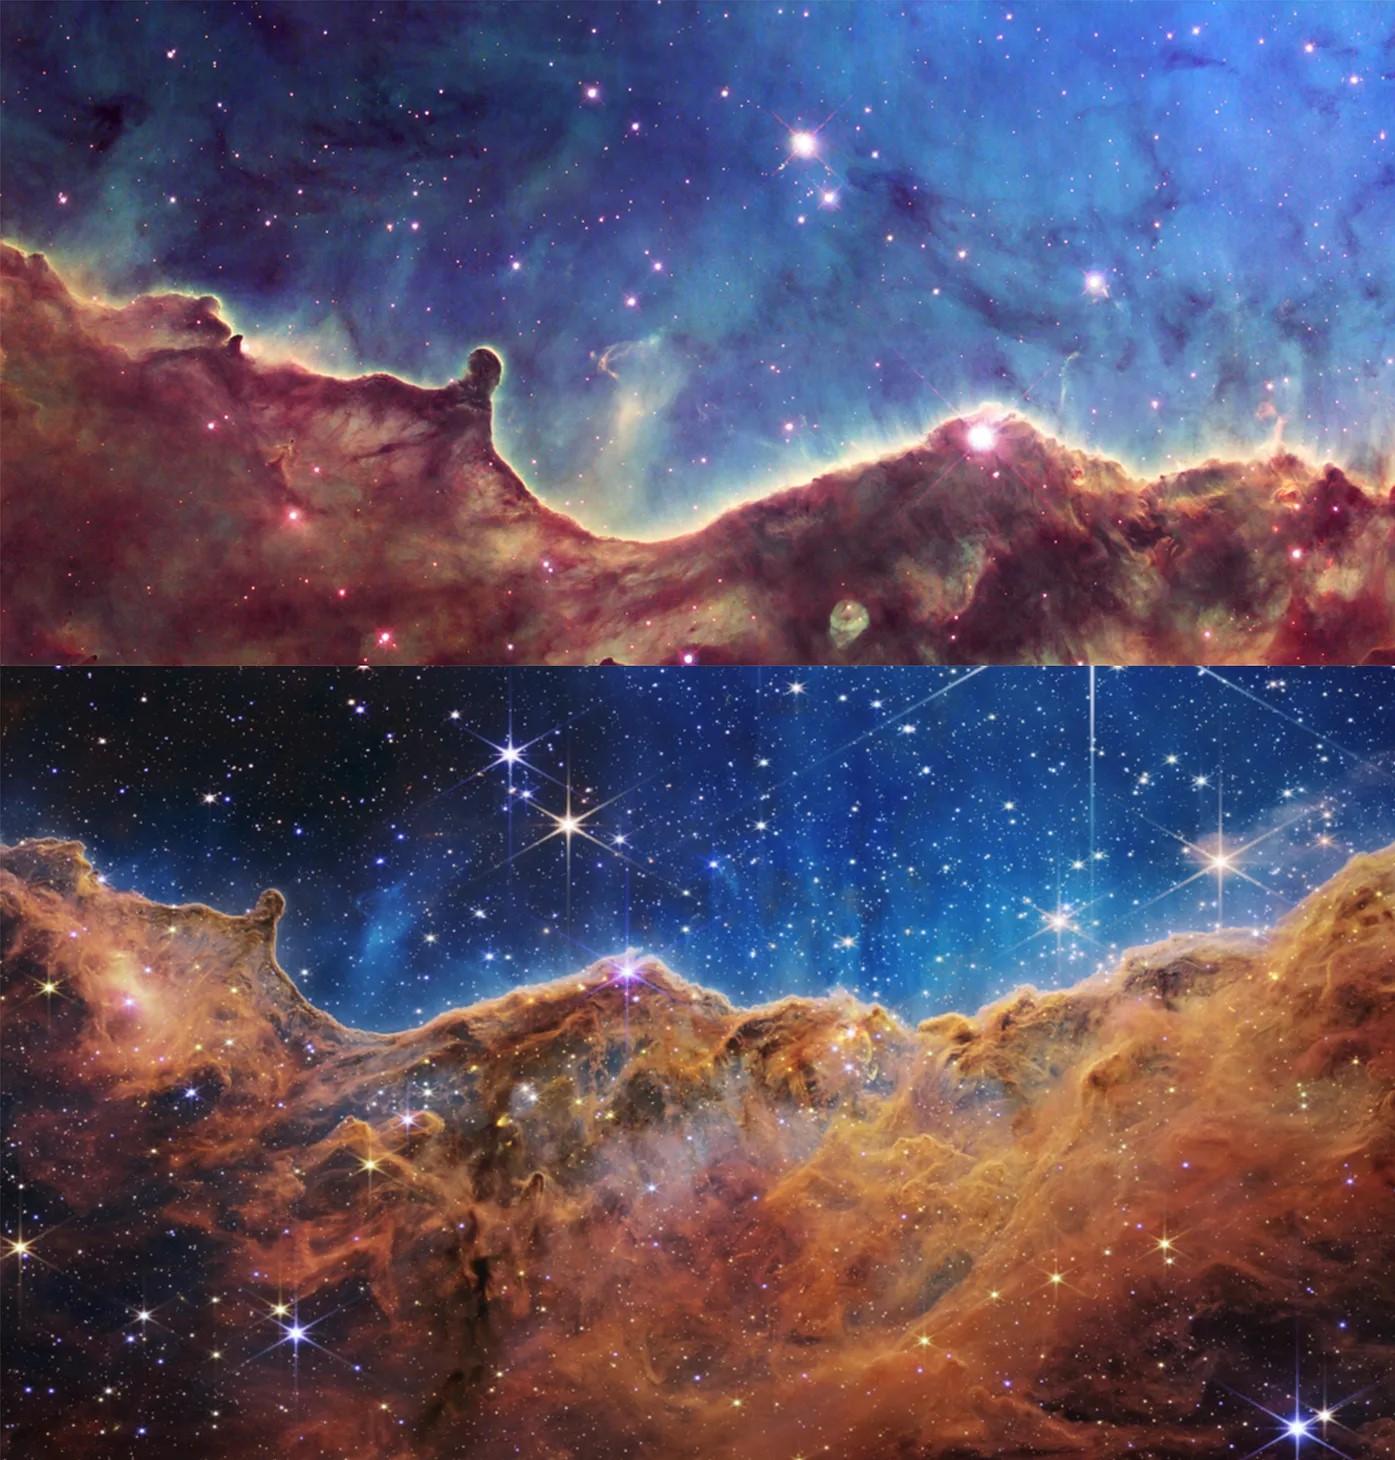 Prvý obrázok z Webbovho teleskopu (dole) a porovnanie s kvalitou z Hubblovho teleskopu (hore).